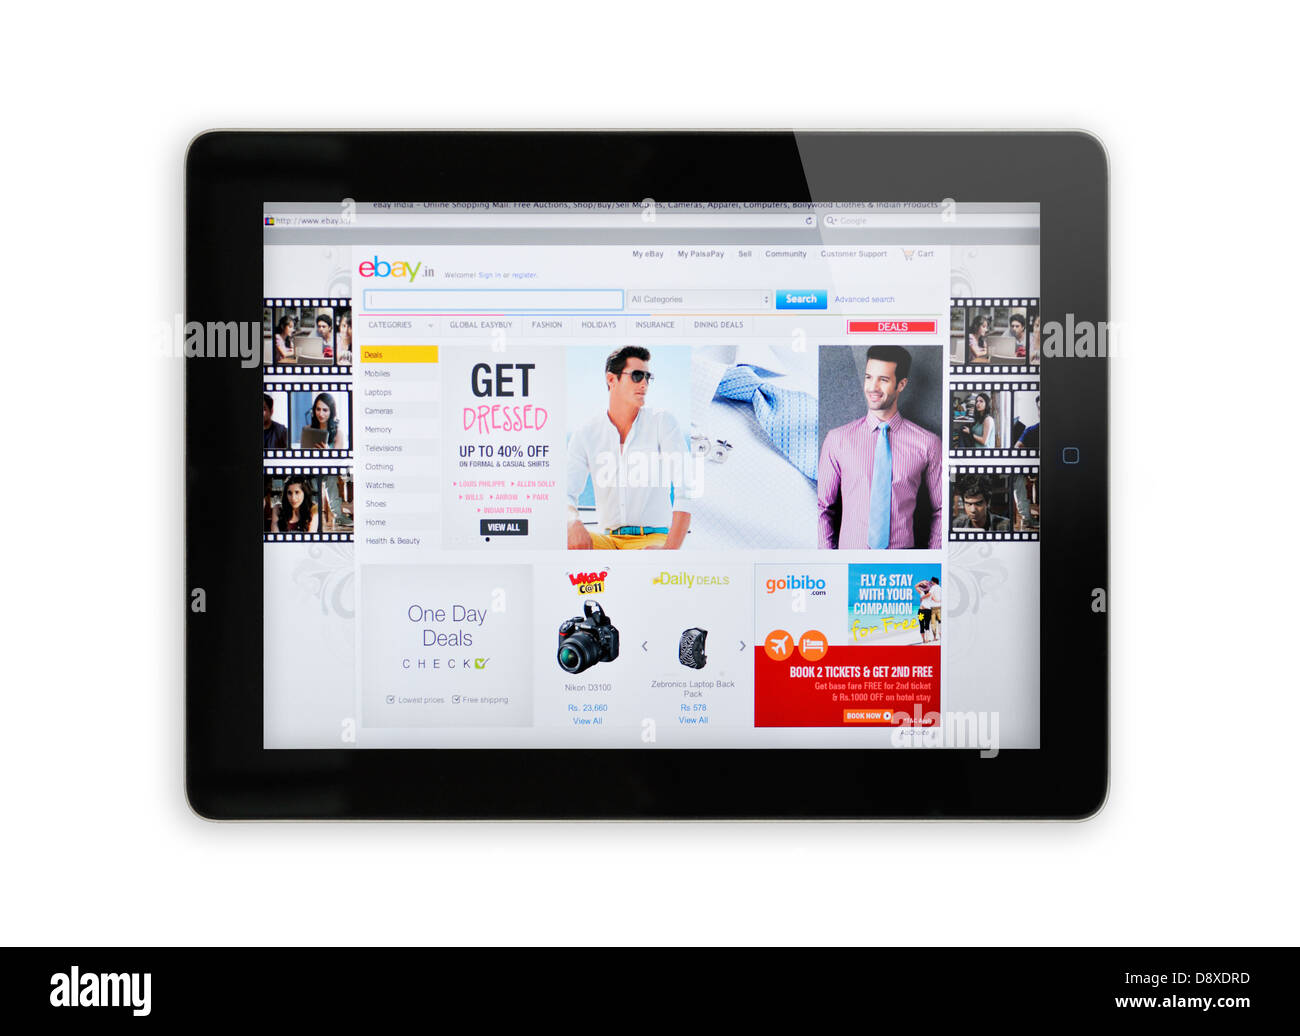 Indien eBay online-shopping-Website auf dem iPad-Bildschirm Stockfoto